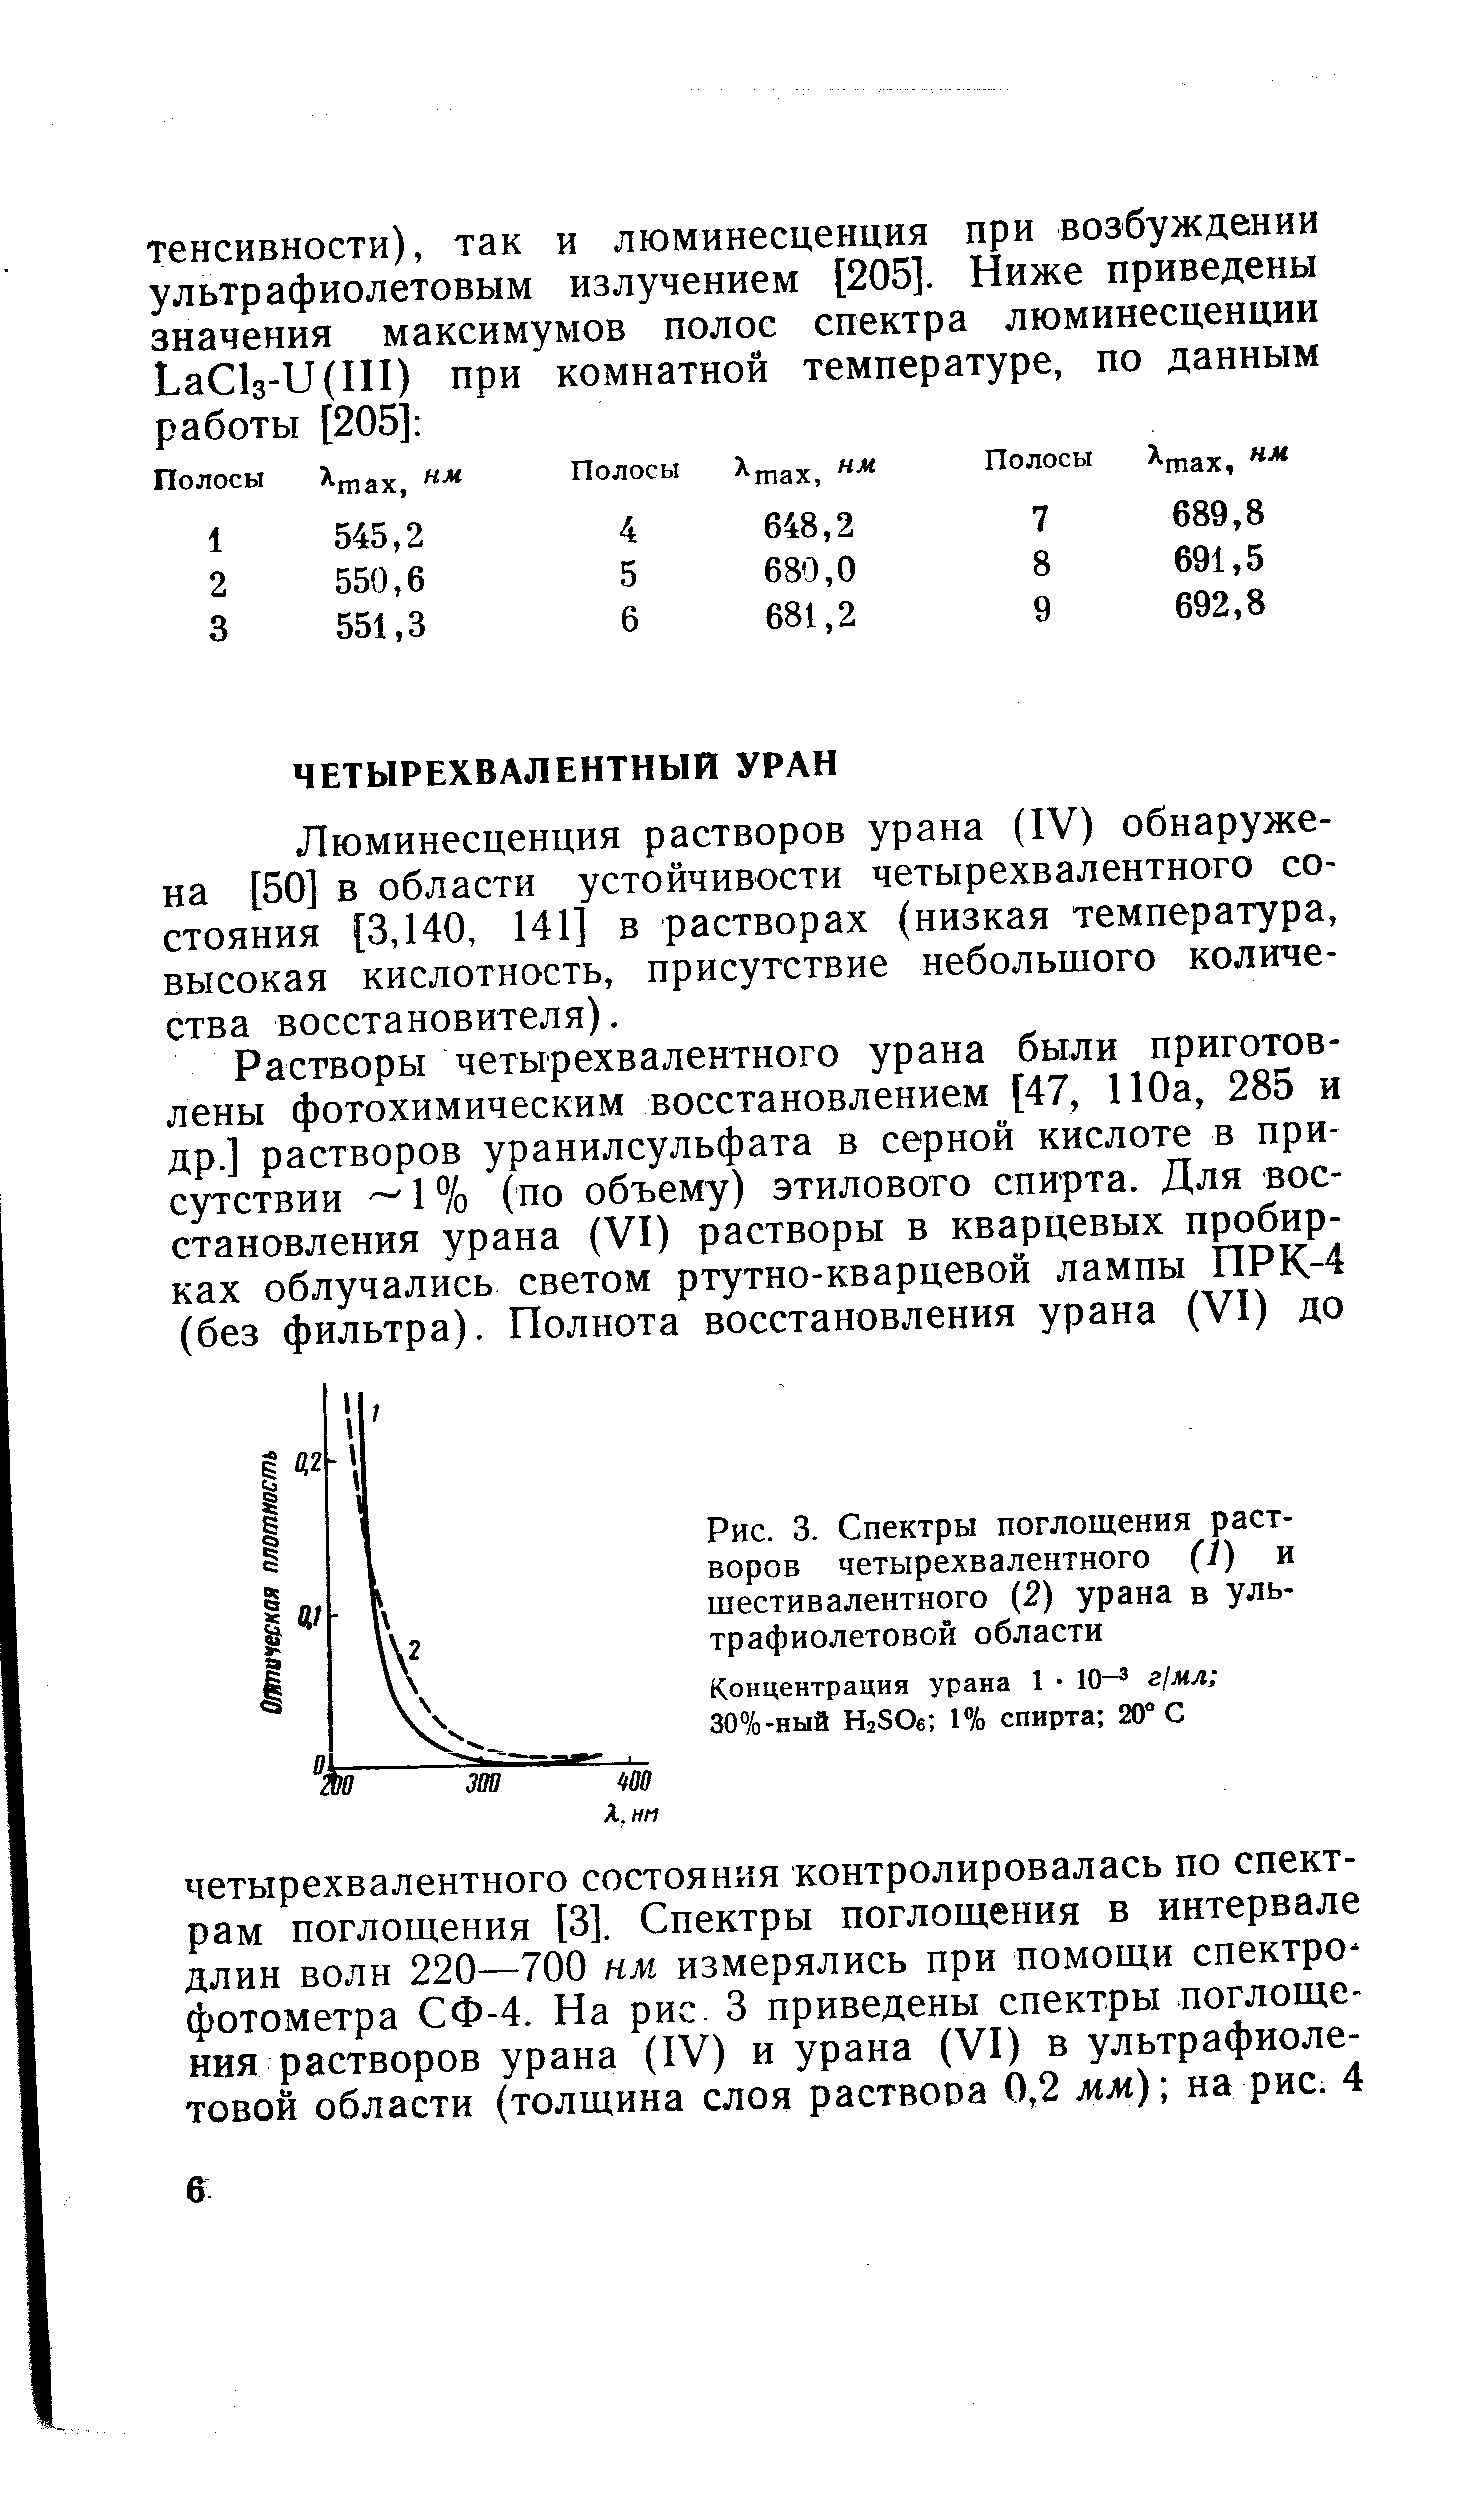 Люминесценция растворов урана (IV) обнаружена [50] в области устойчивости четырехвалентного состояния [3,140, 141] в растворах (низкая температура, высокая кислотность, присутствие небольшого количества восстановителя).